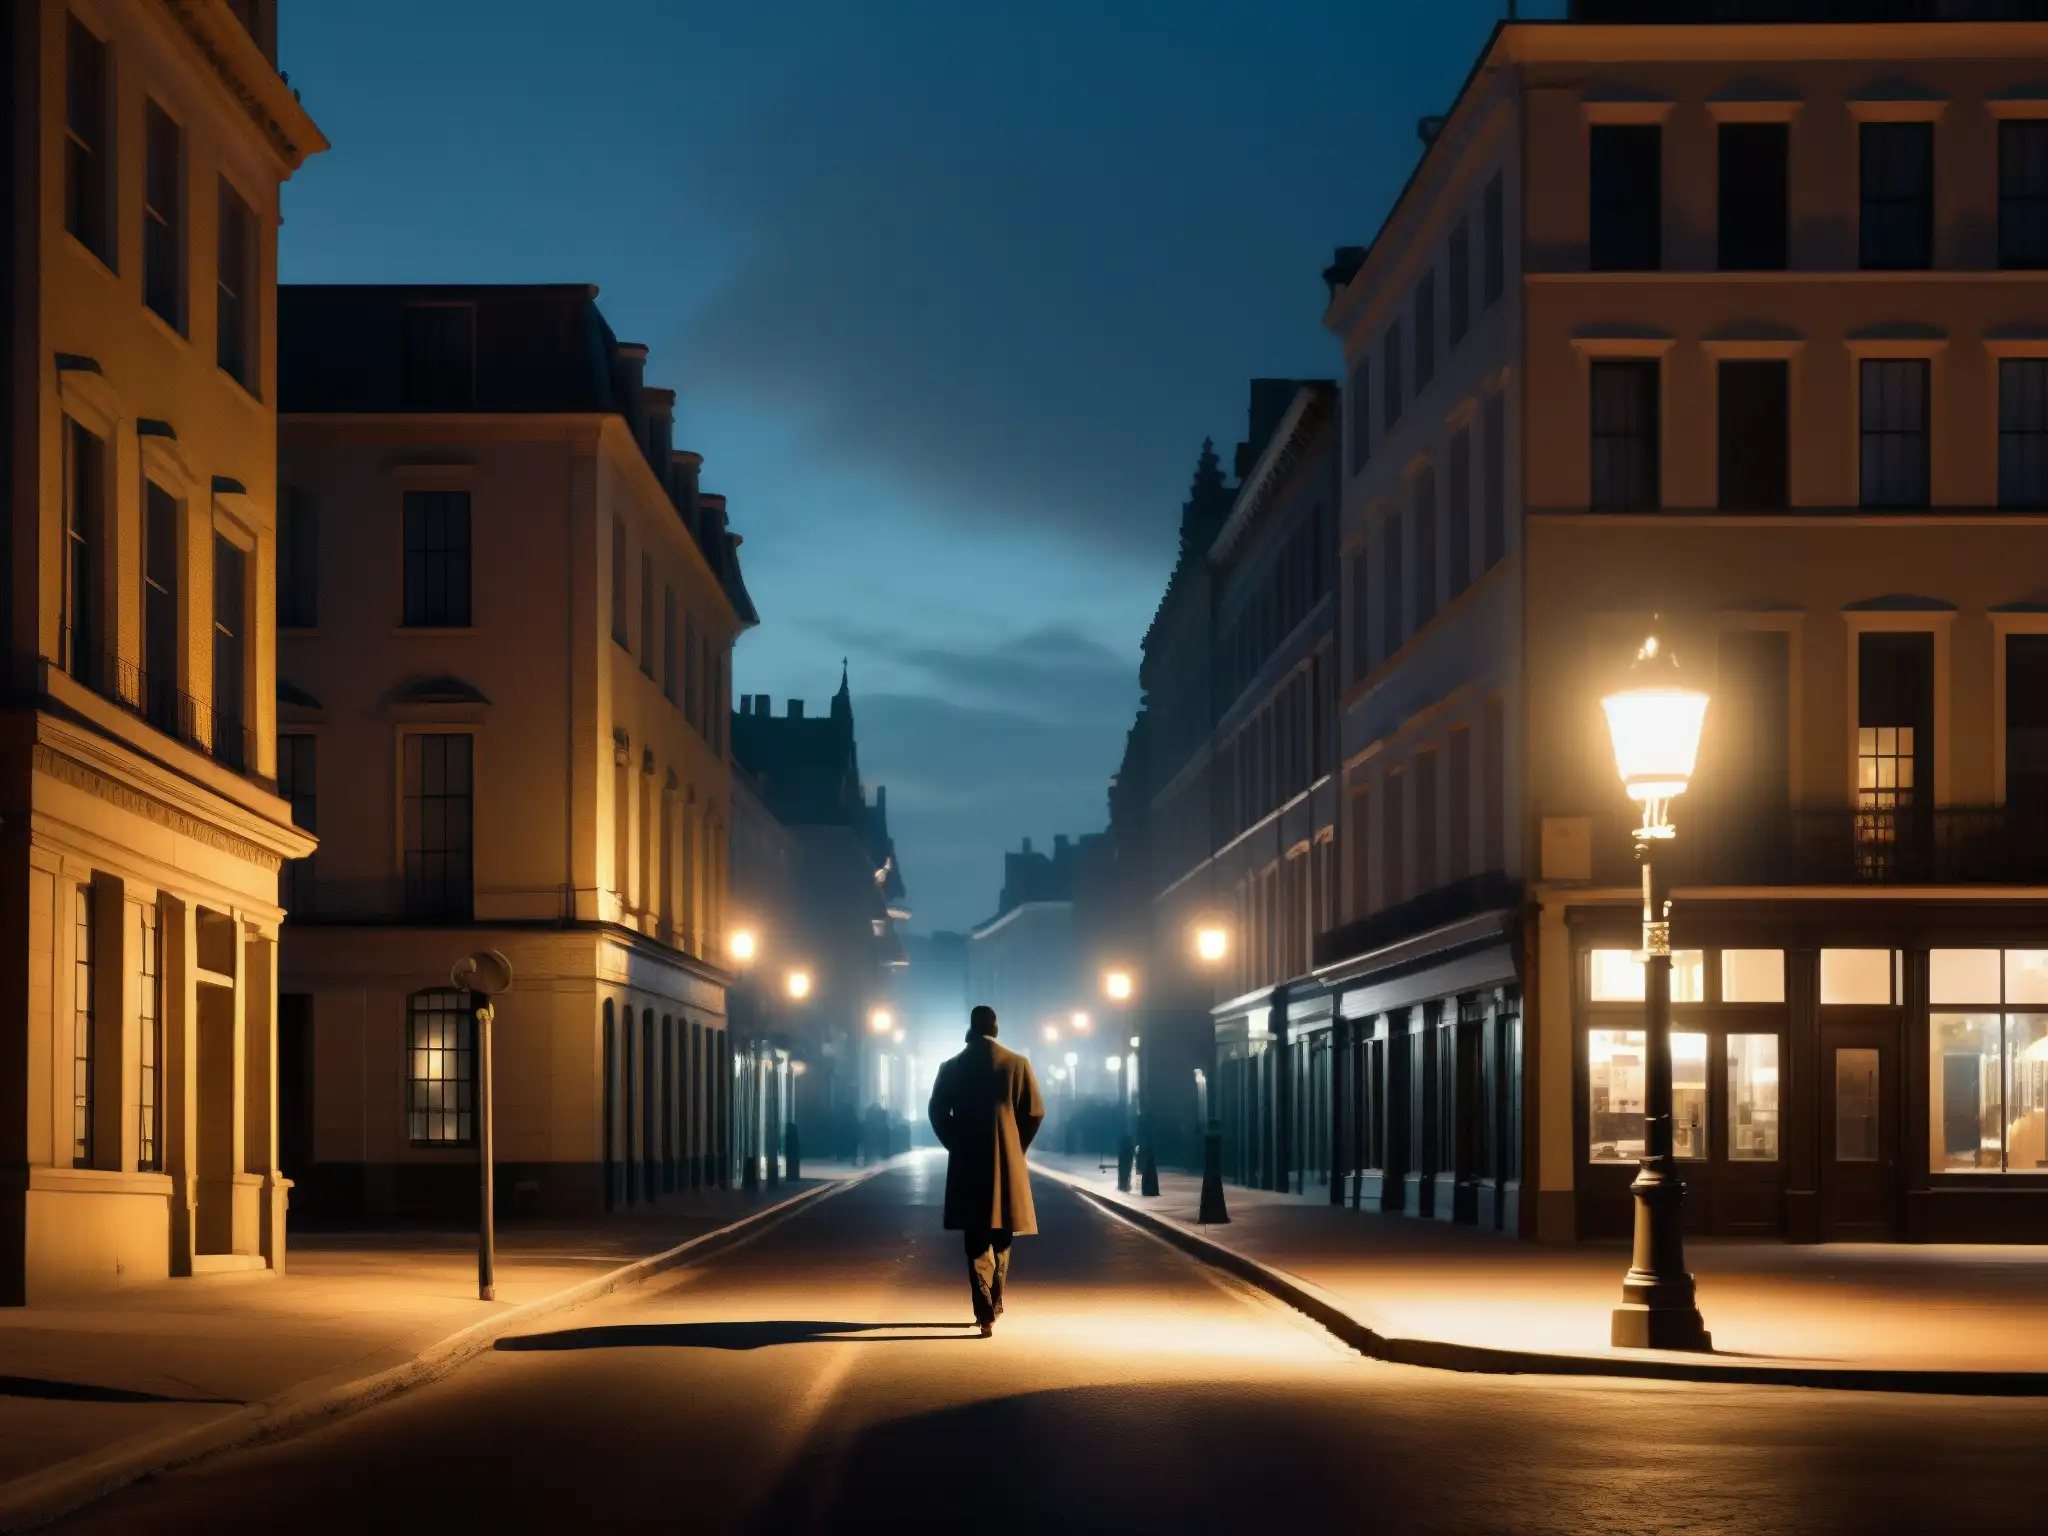 Una fotografía detallada de una solitaria figura caminando en una oscura calle nocturna, bajo la luz de una farola parpadeante